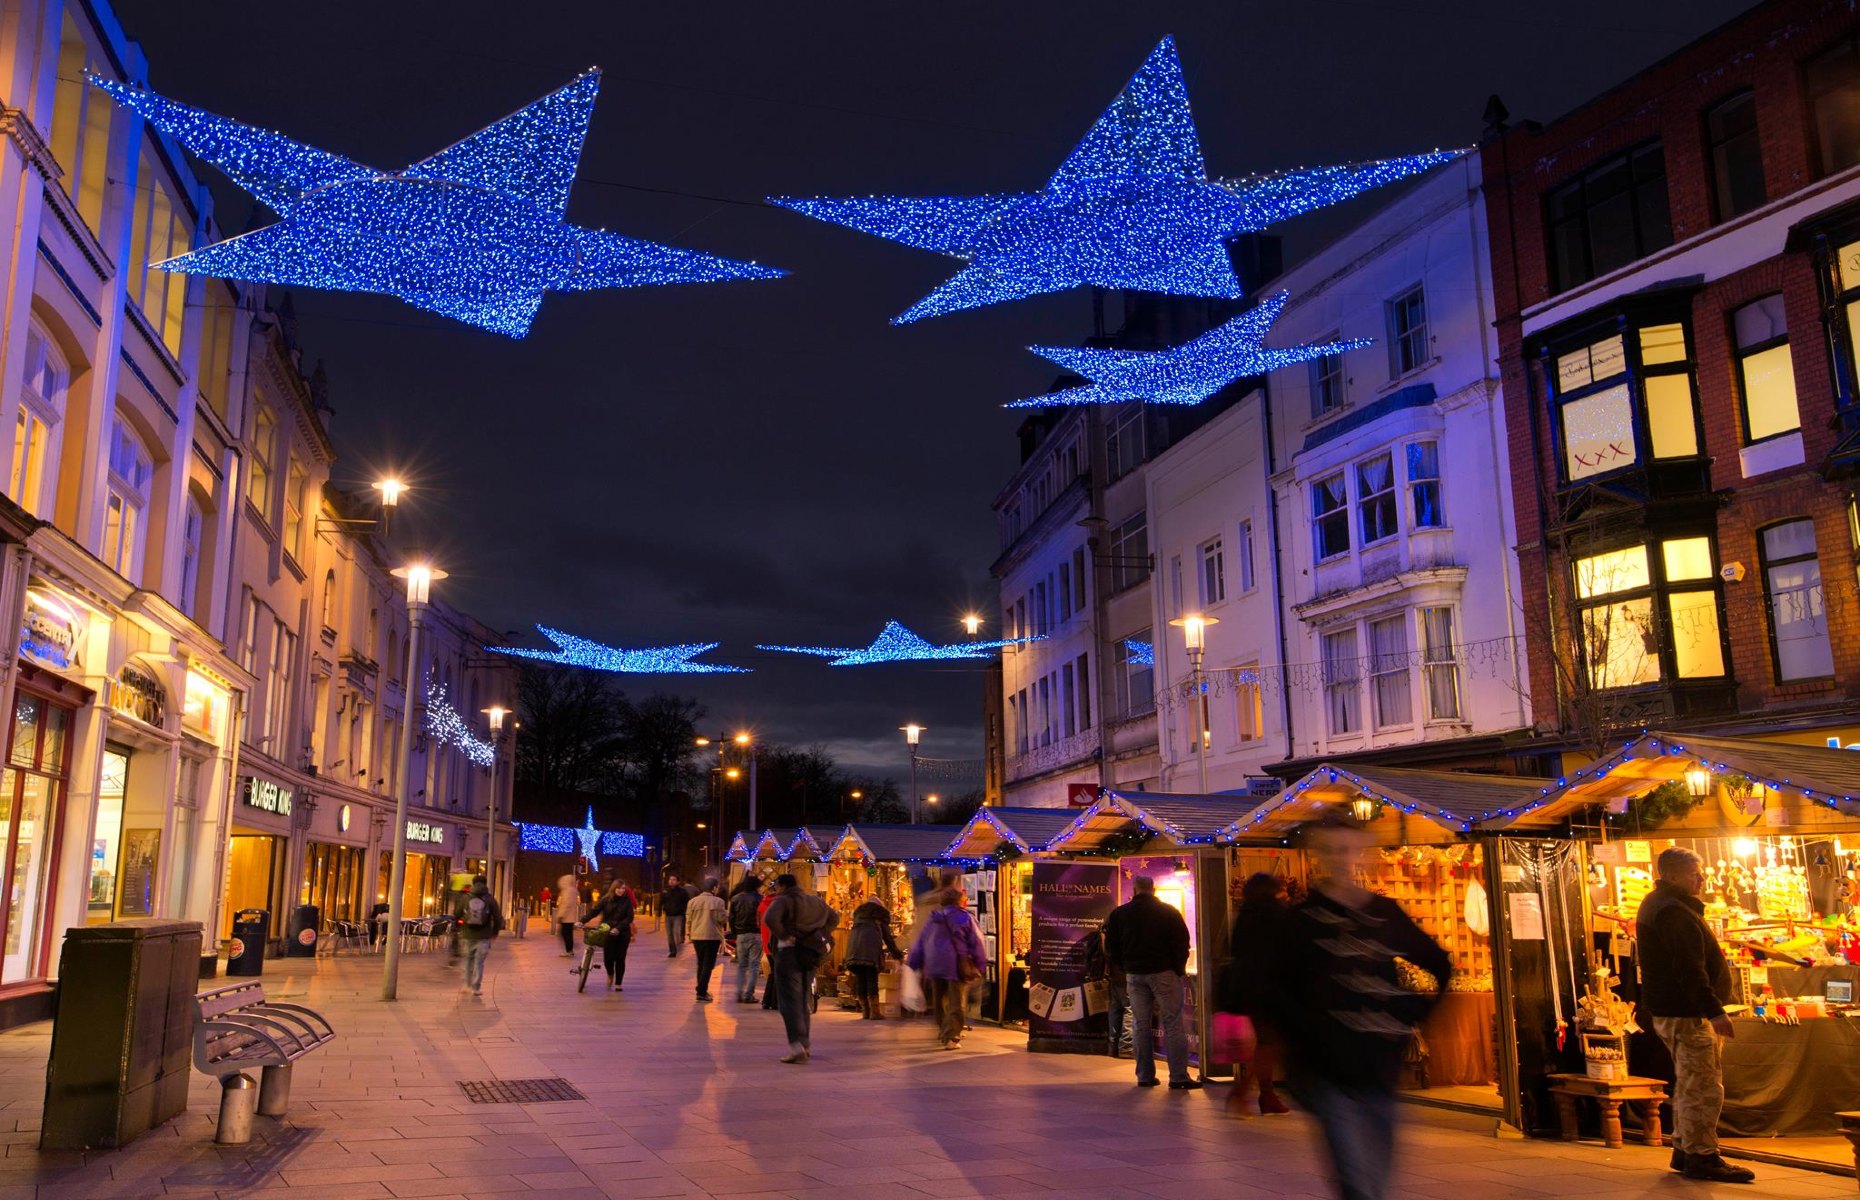 Cardiff Christmas market (Image: Cardiff Christmas Market/Facebook)